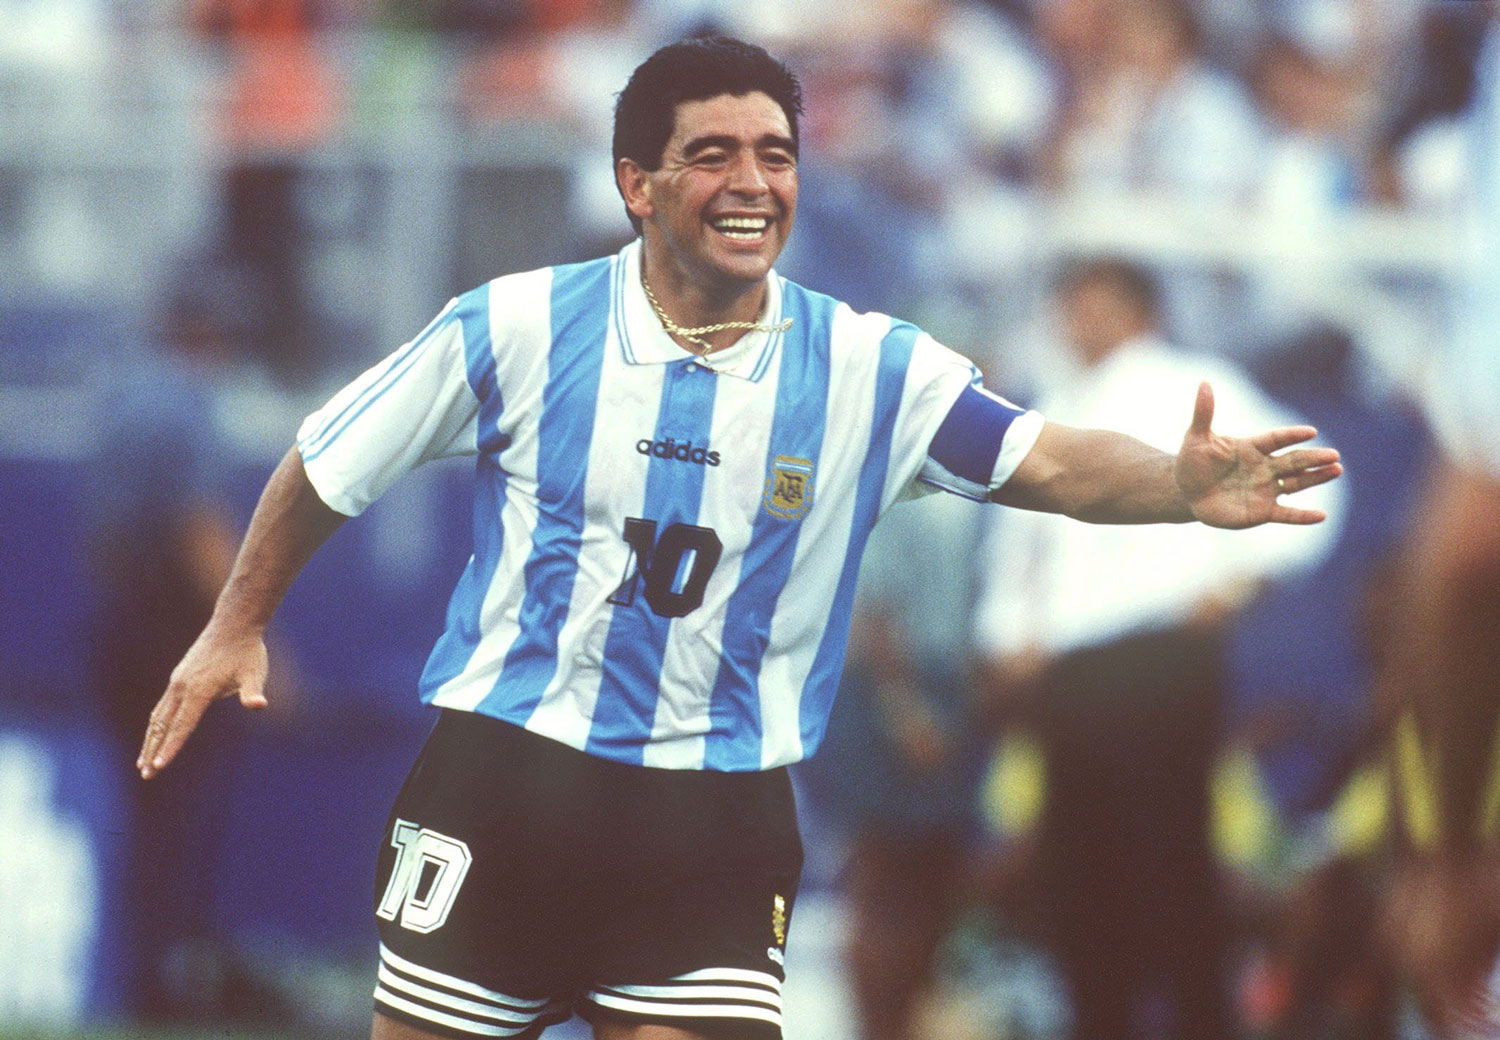 Maradona en su último partido con la selección argentina en el mundial de Estados Unidos 1994 que ganaría 2 a 1 contra Nigeria. ©Michael Kunkel/Bongarts/Getty Images.